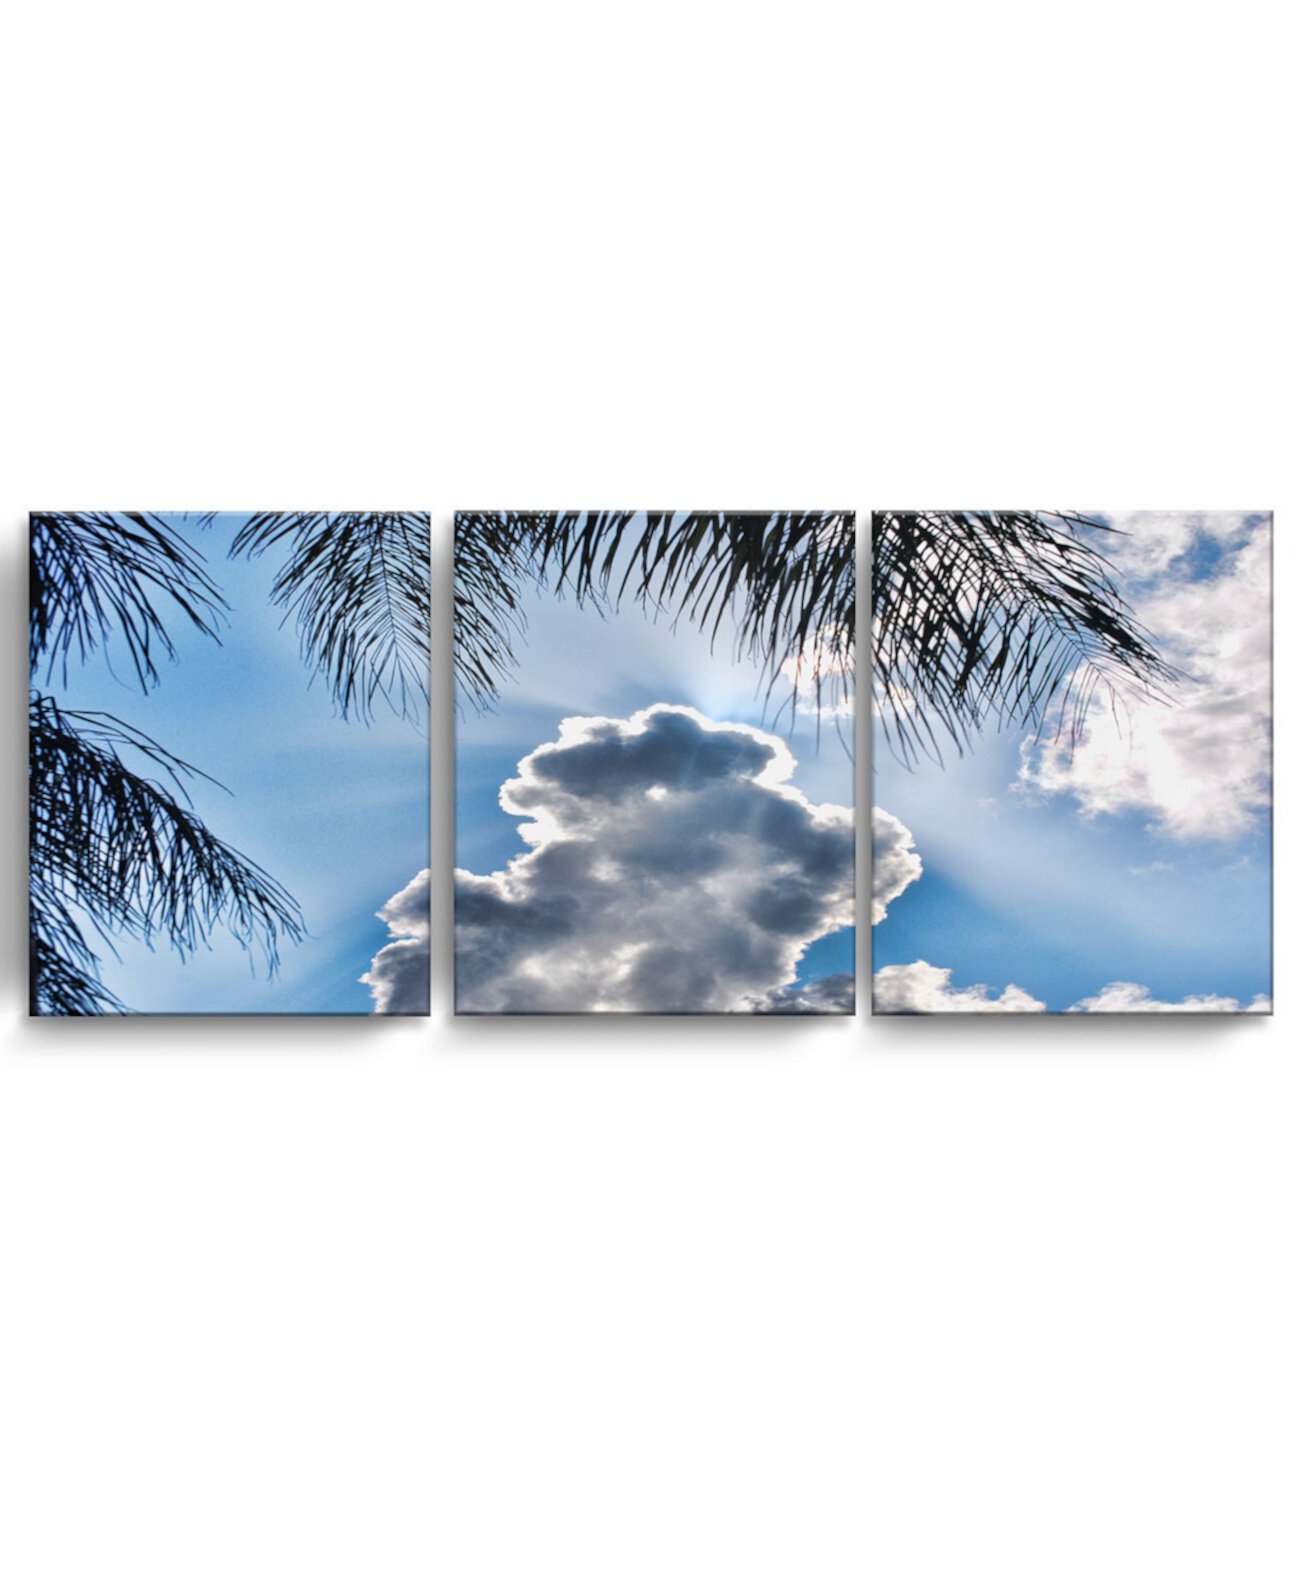 Набор из 3-х предметов для рисования на холсте с прибрежными стенами Cloudy Palms, 20 "x 48" Ready2HangArt